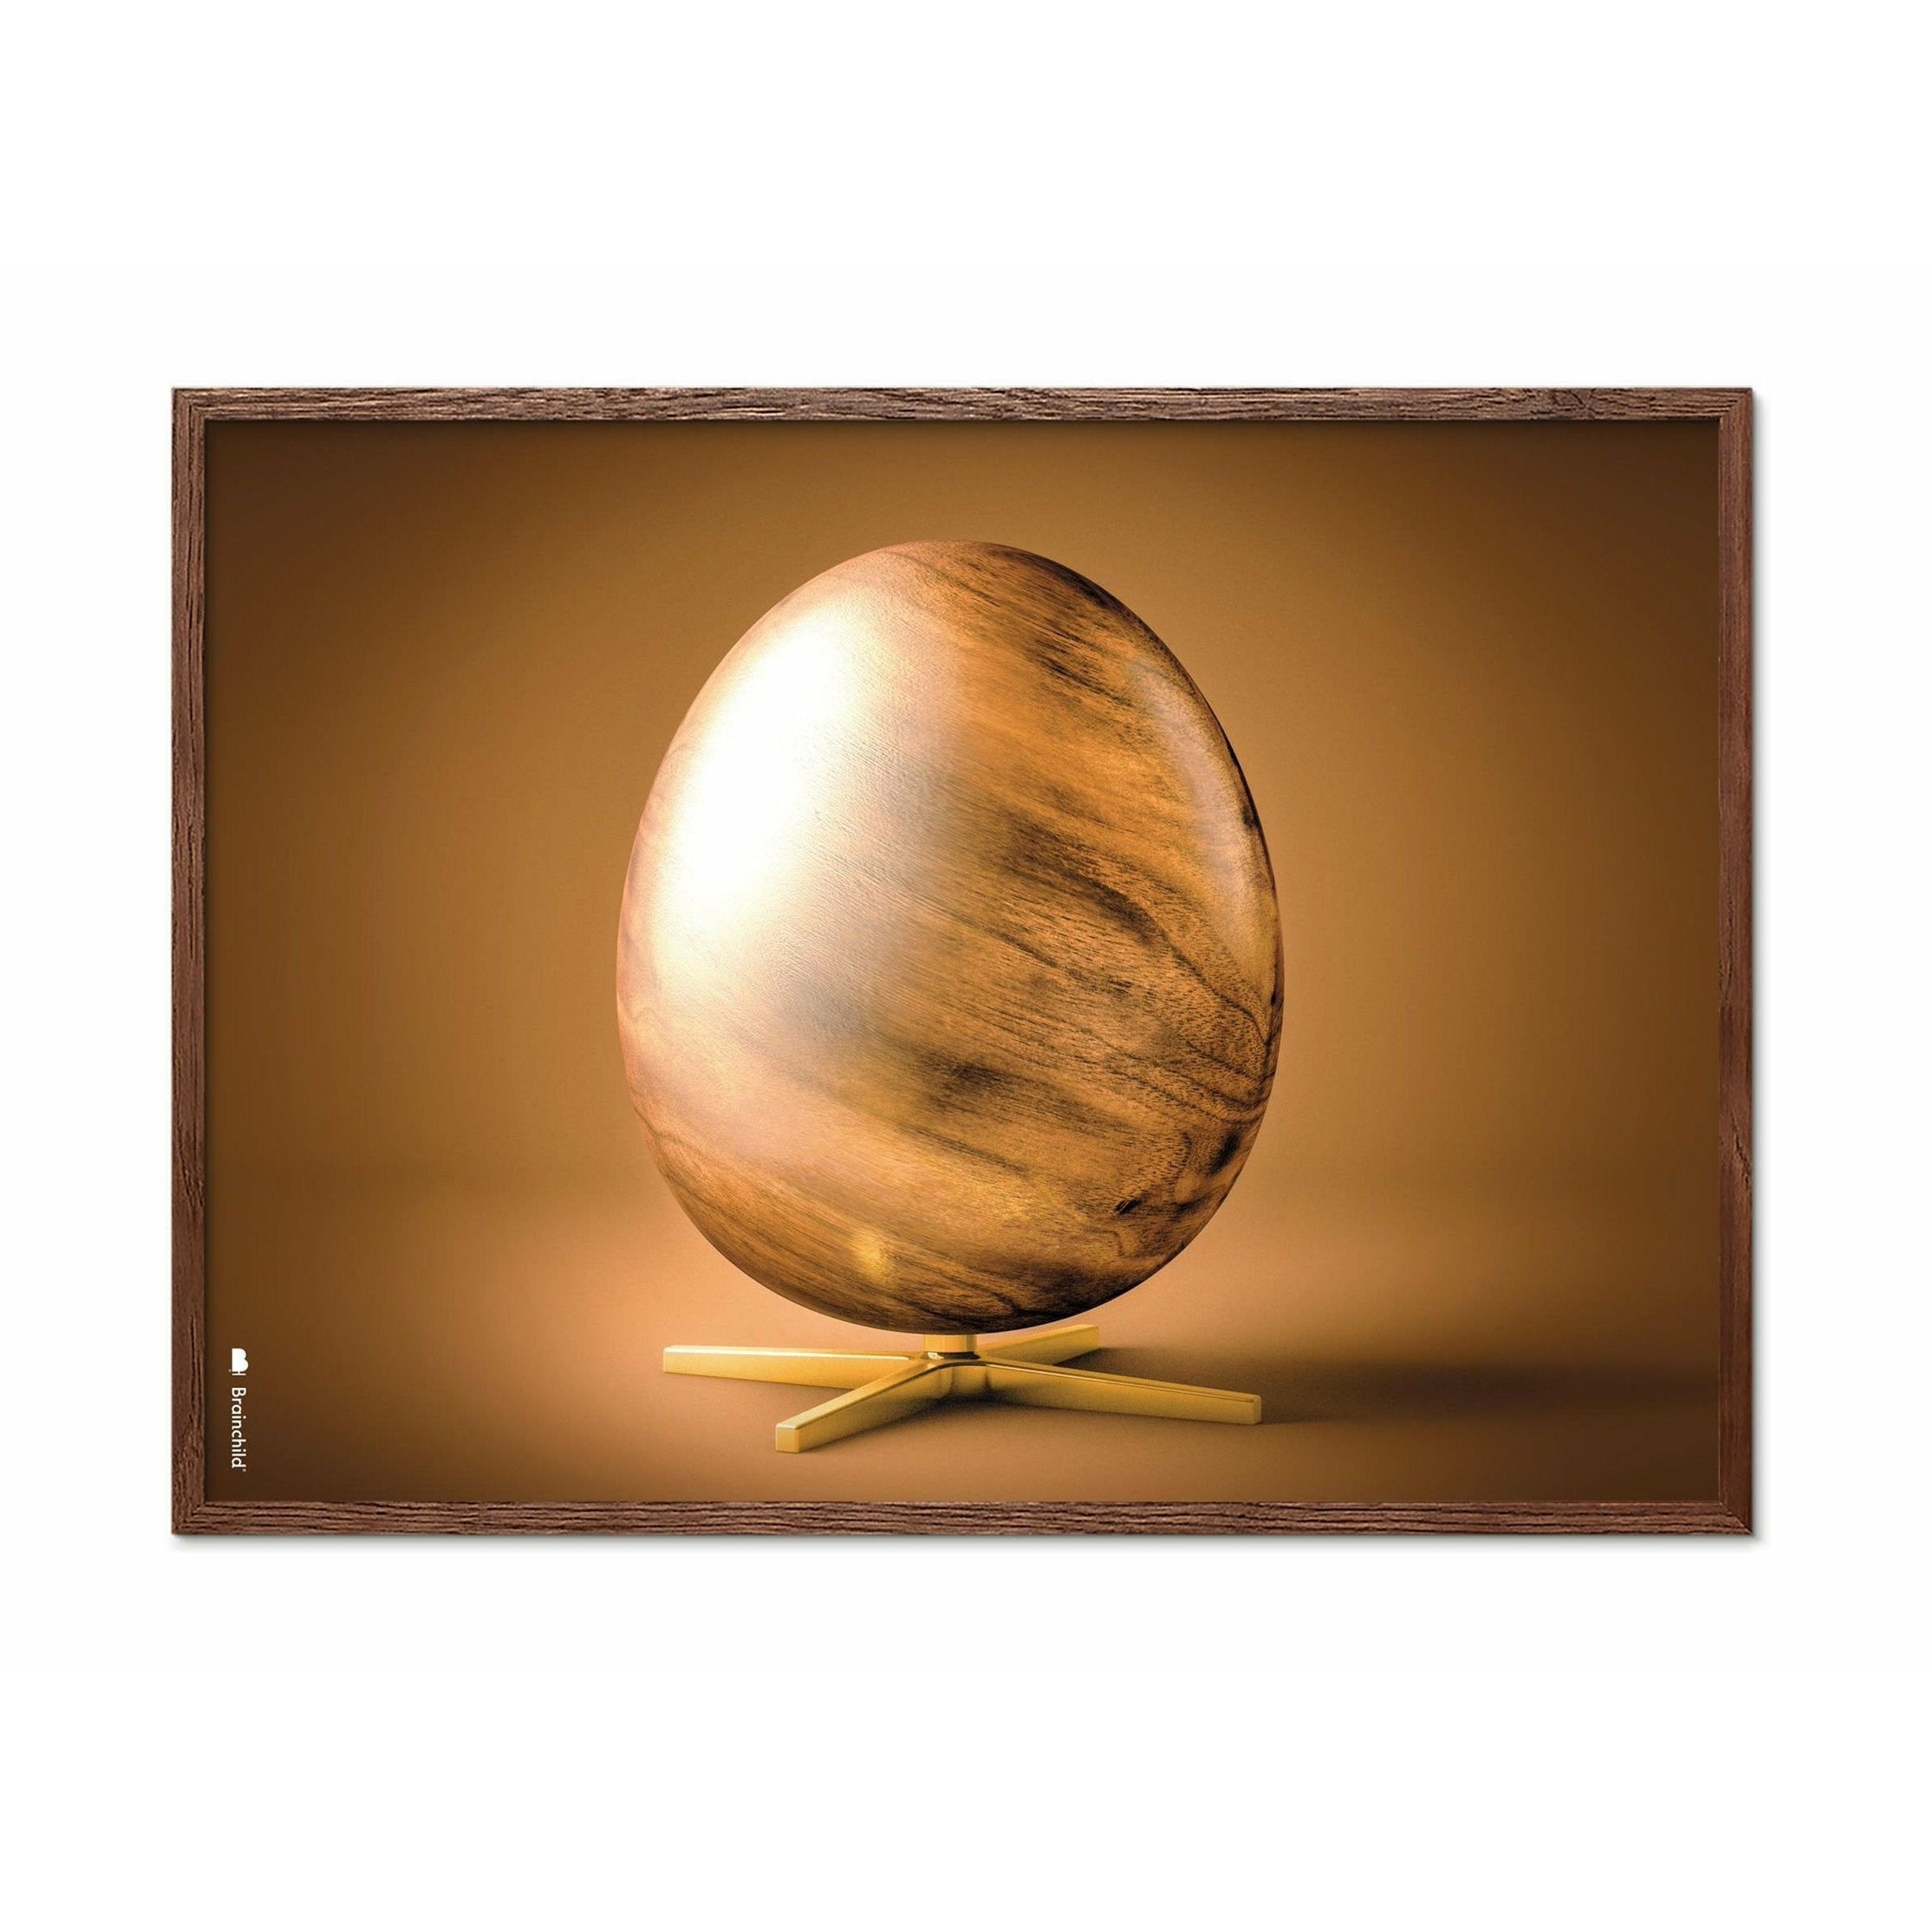 Poster in formato croce di uovo di prima cosa, telaio in legno scuro 50x70 cm, marrone